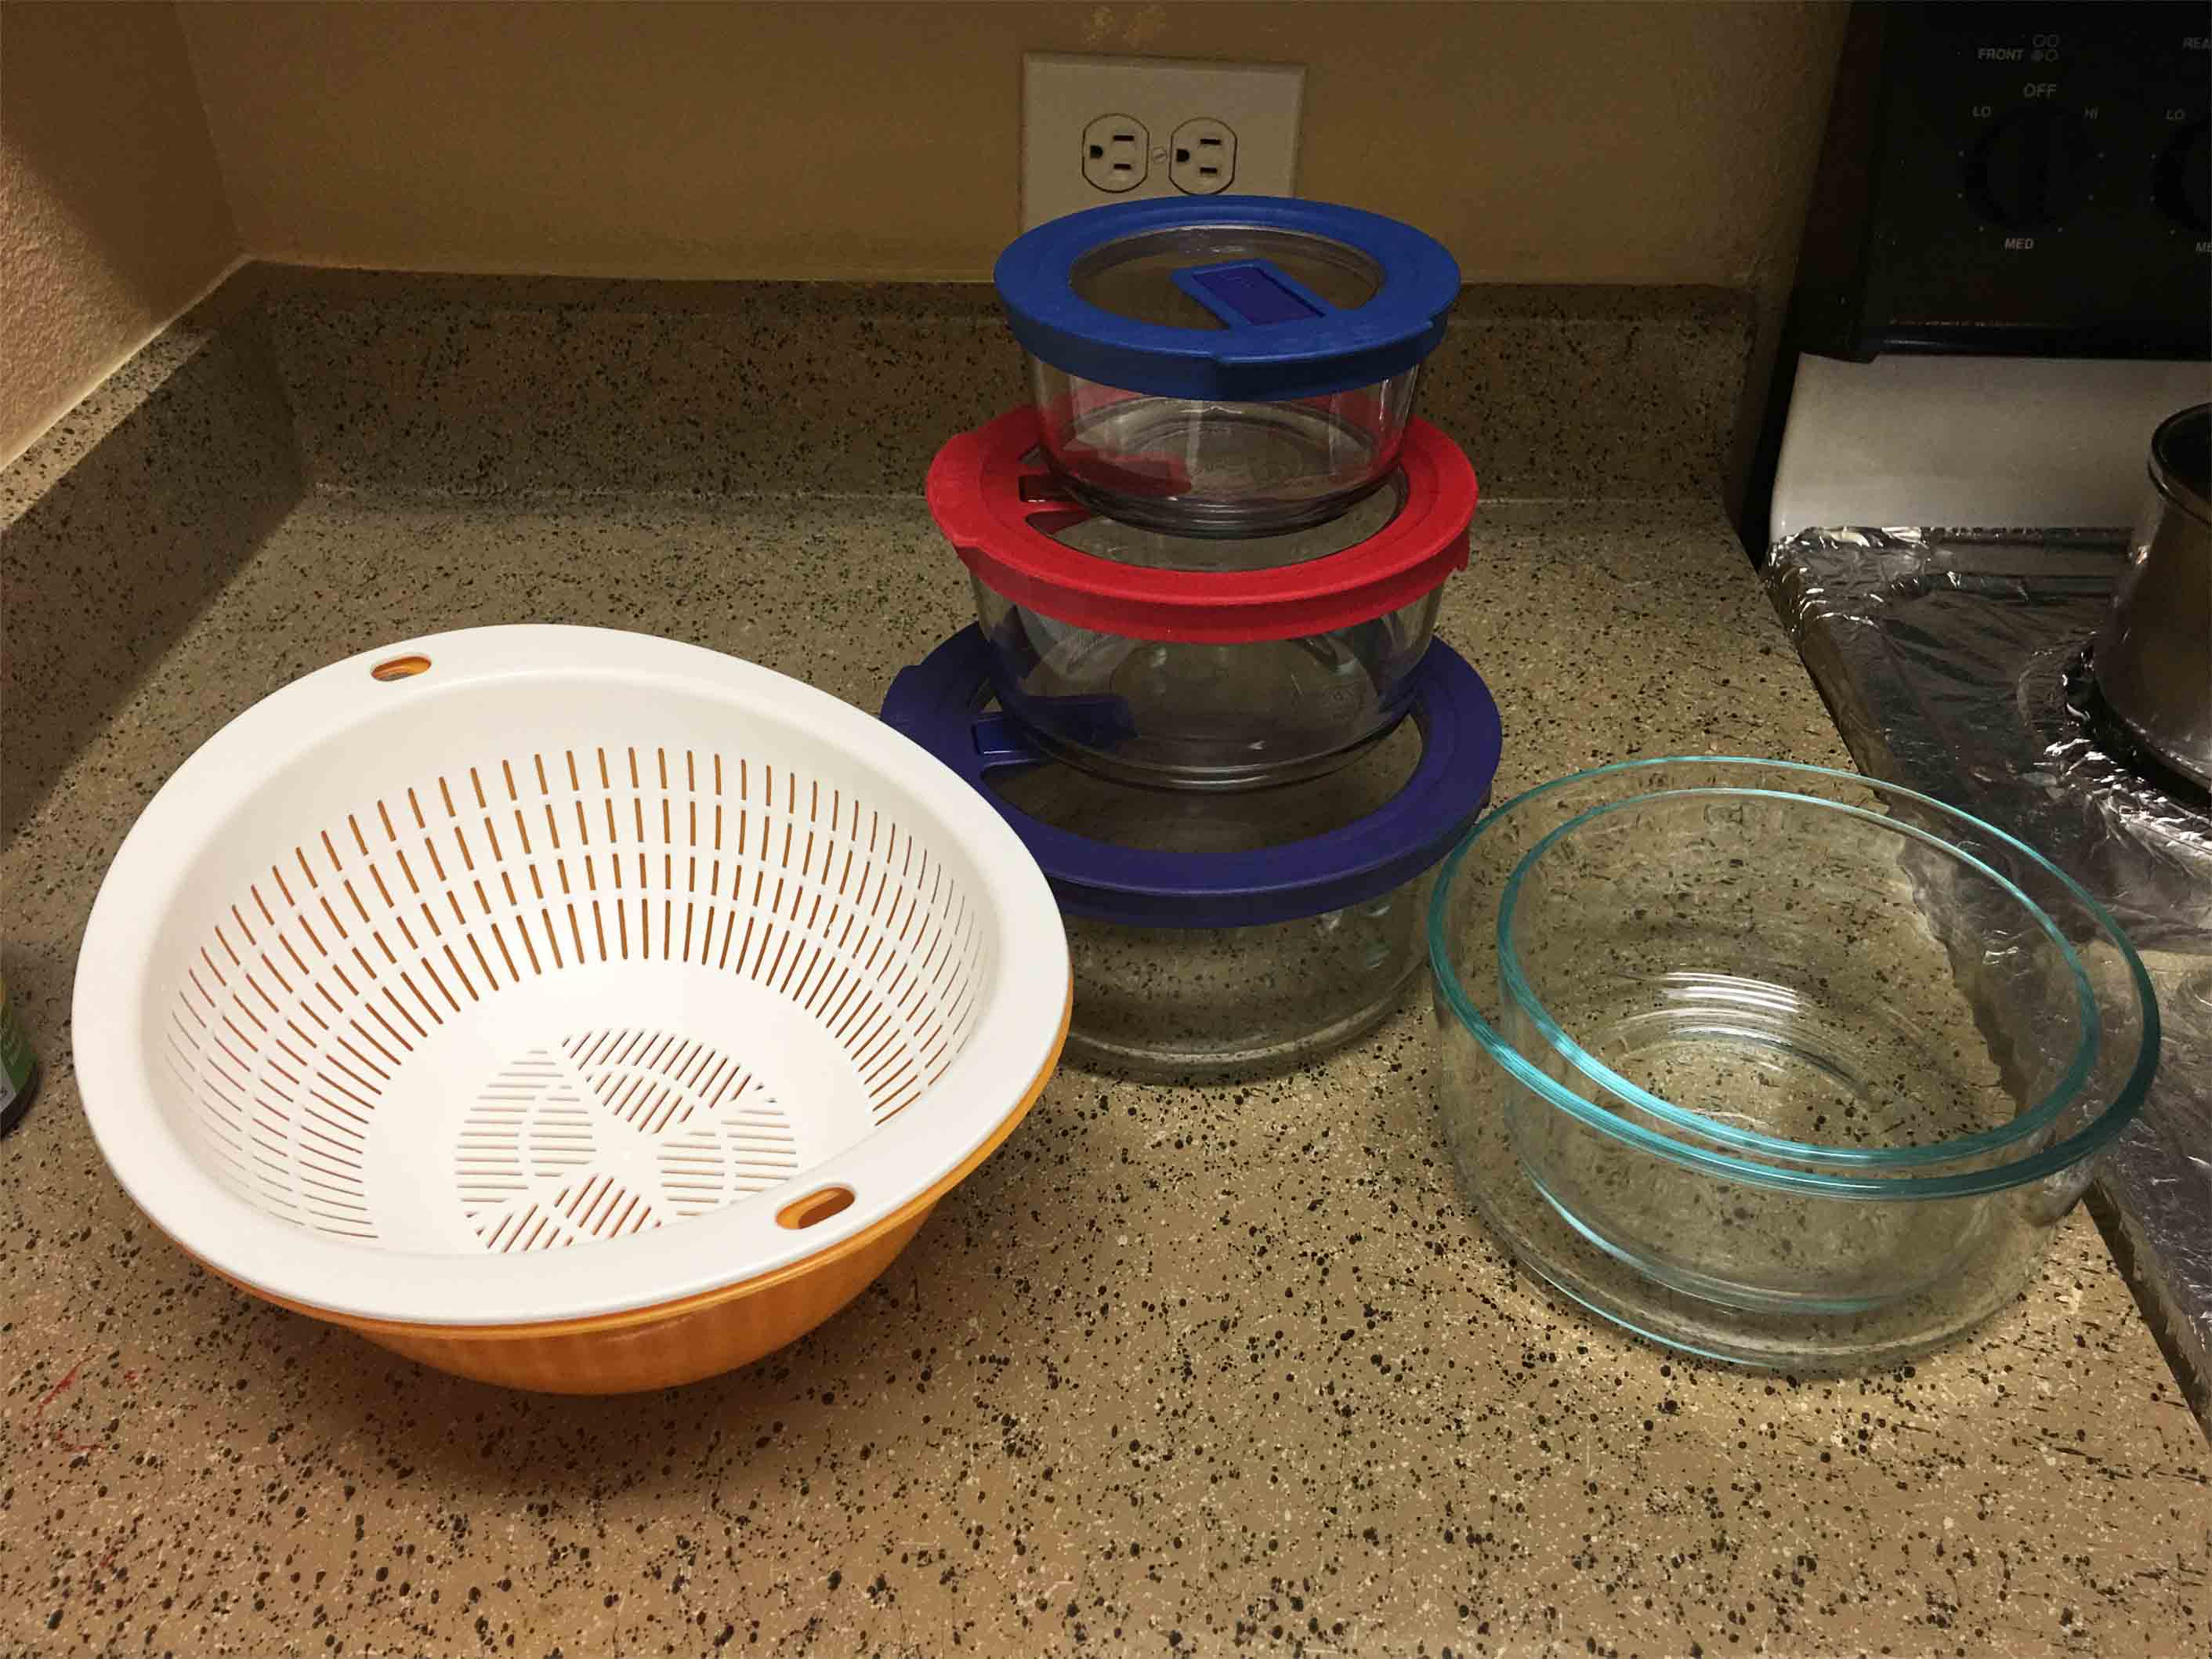 洗菜篮 - $1    pyrex玻璃碗组 - 一共$5（已出）